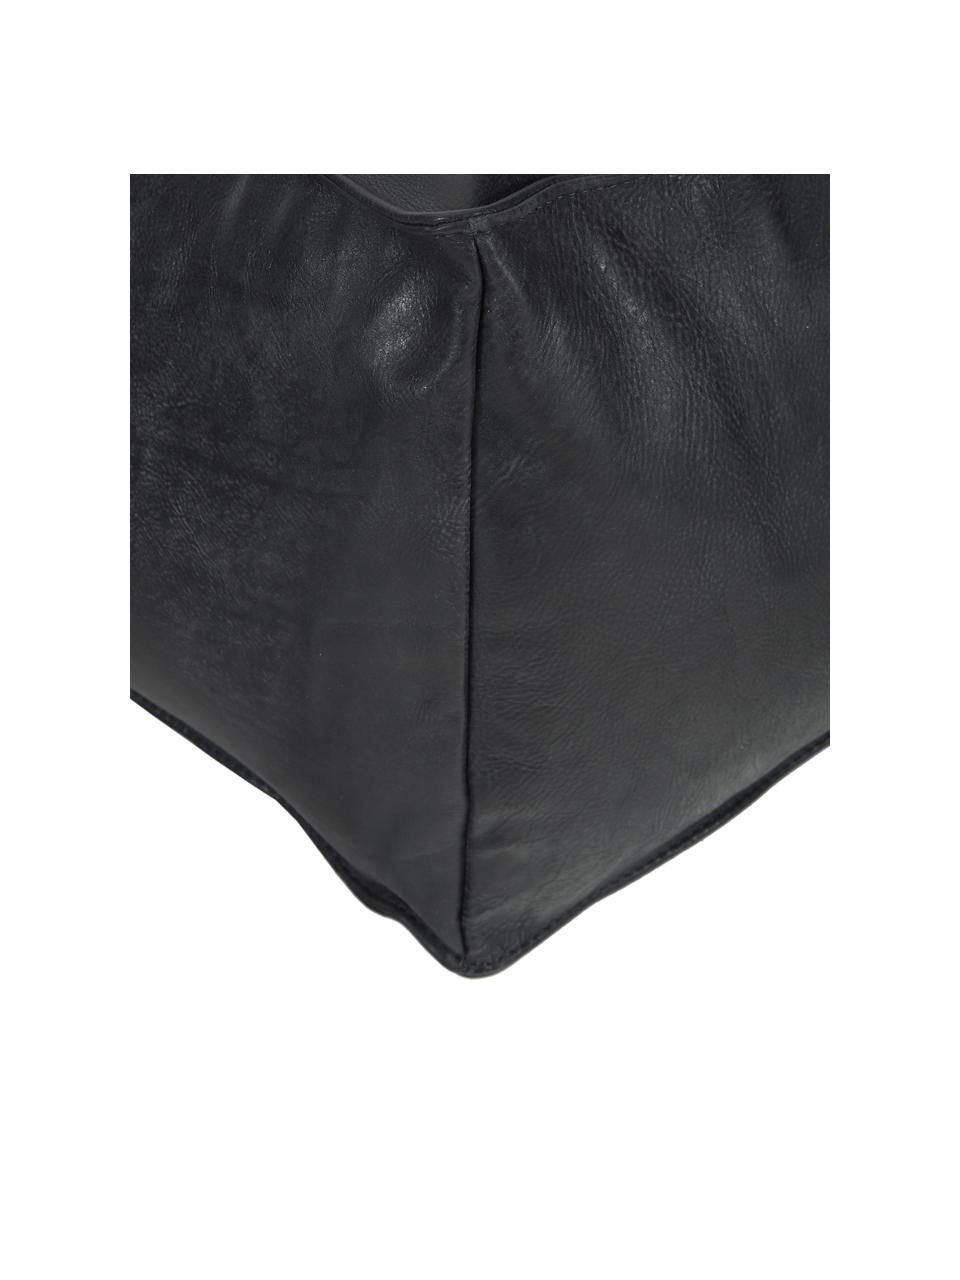 Leder-Bodenkissen Porthos in Schwarz, Bezug: 100% Anilinleder, Schwarz, 80 x 33 cm